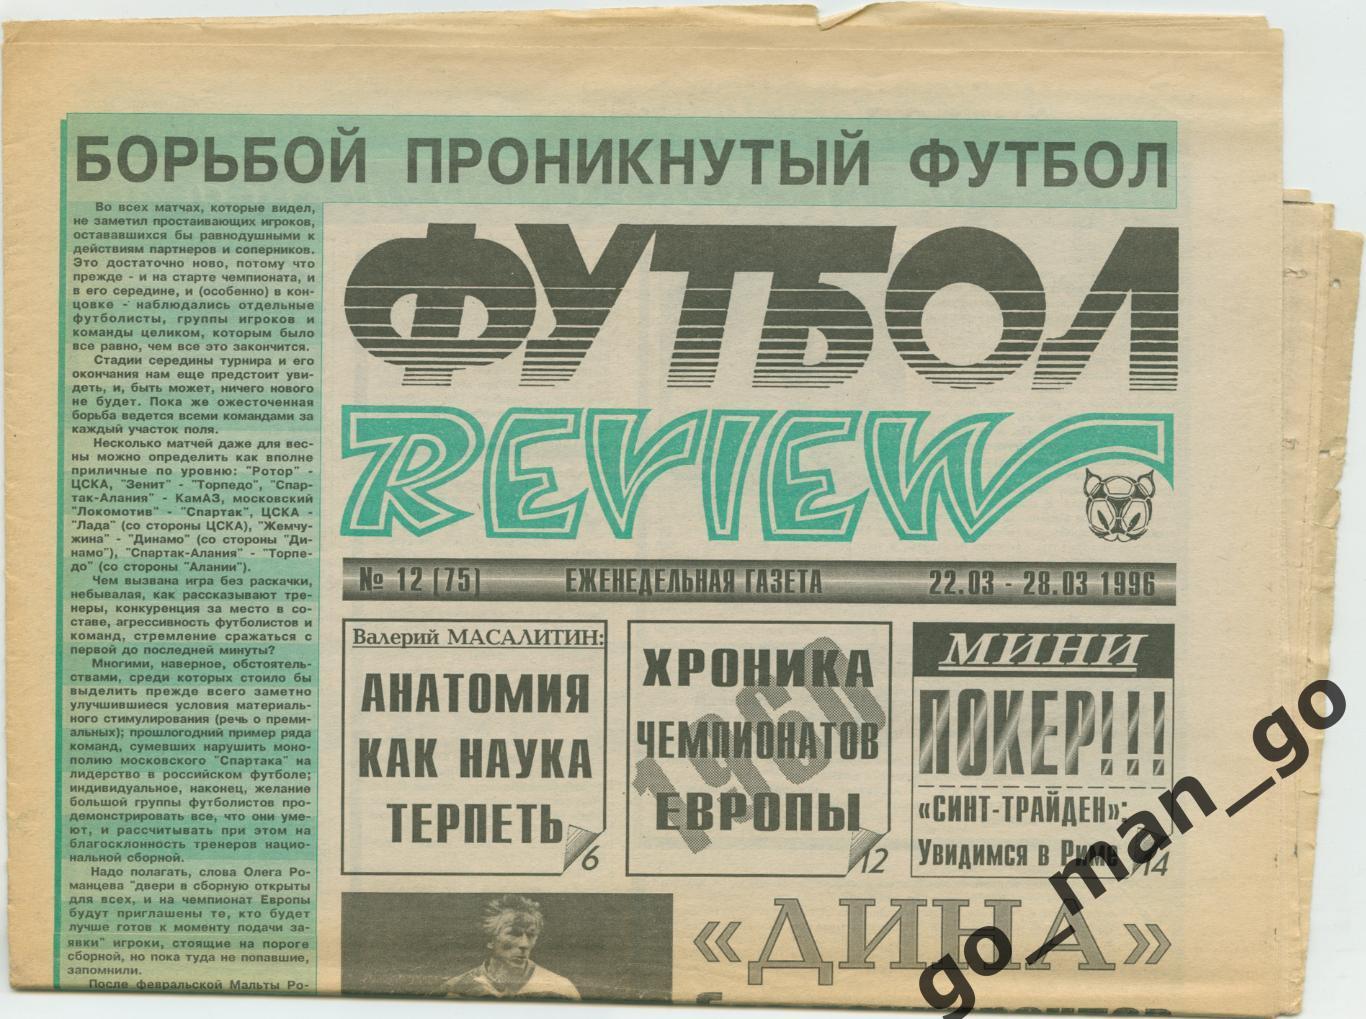 Еженедельник Футбол-Review (Футбол-Ревю), 22-28.03.1996, № 12.